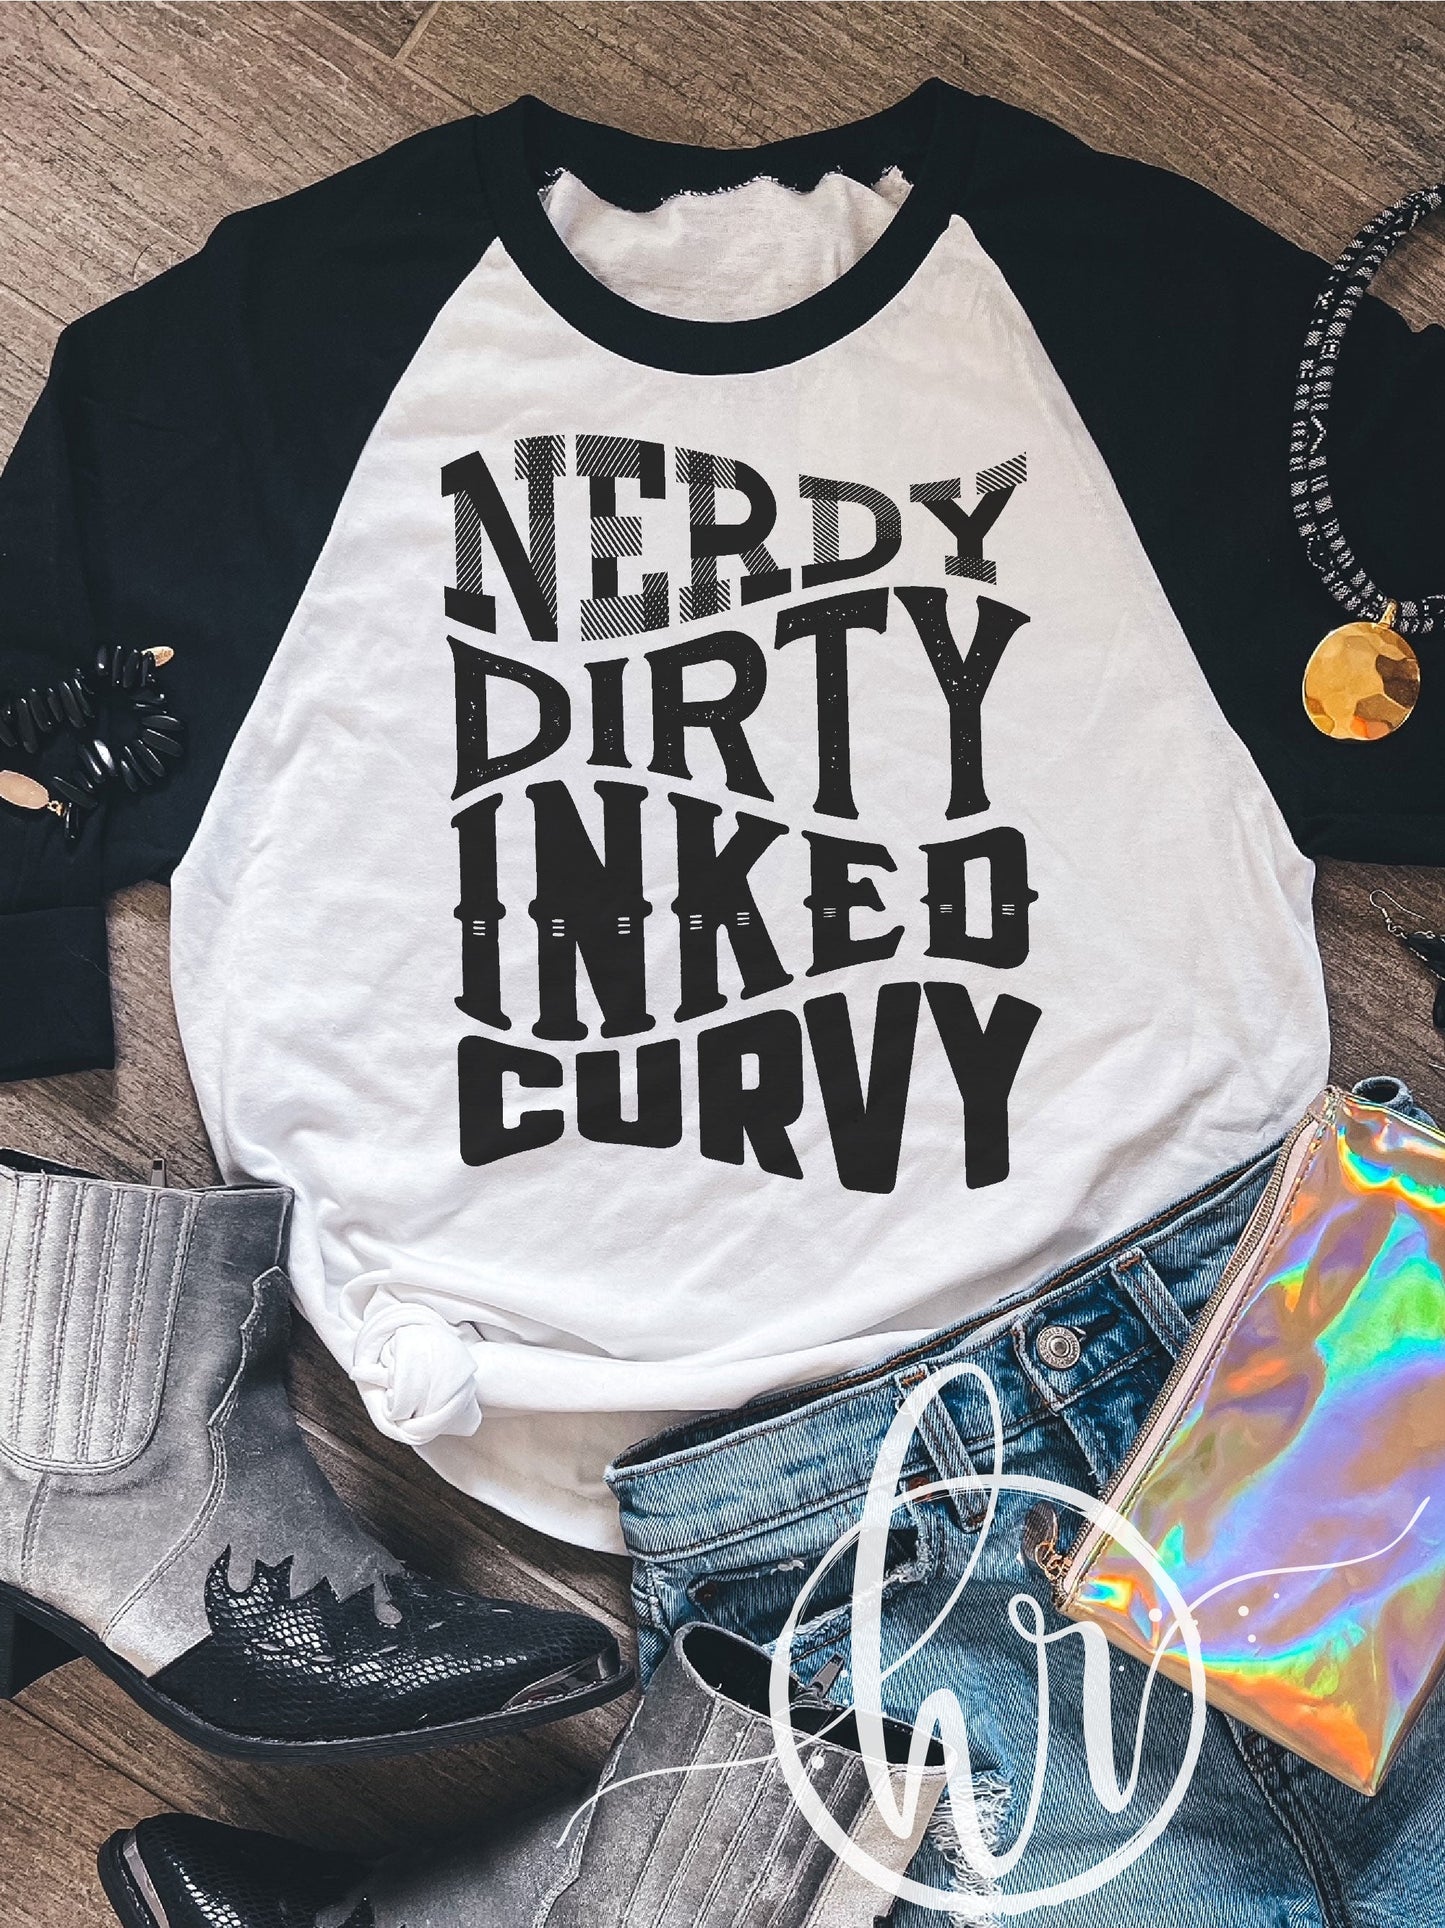 Nerdy Dirty Inked Curvy